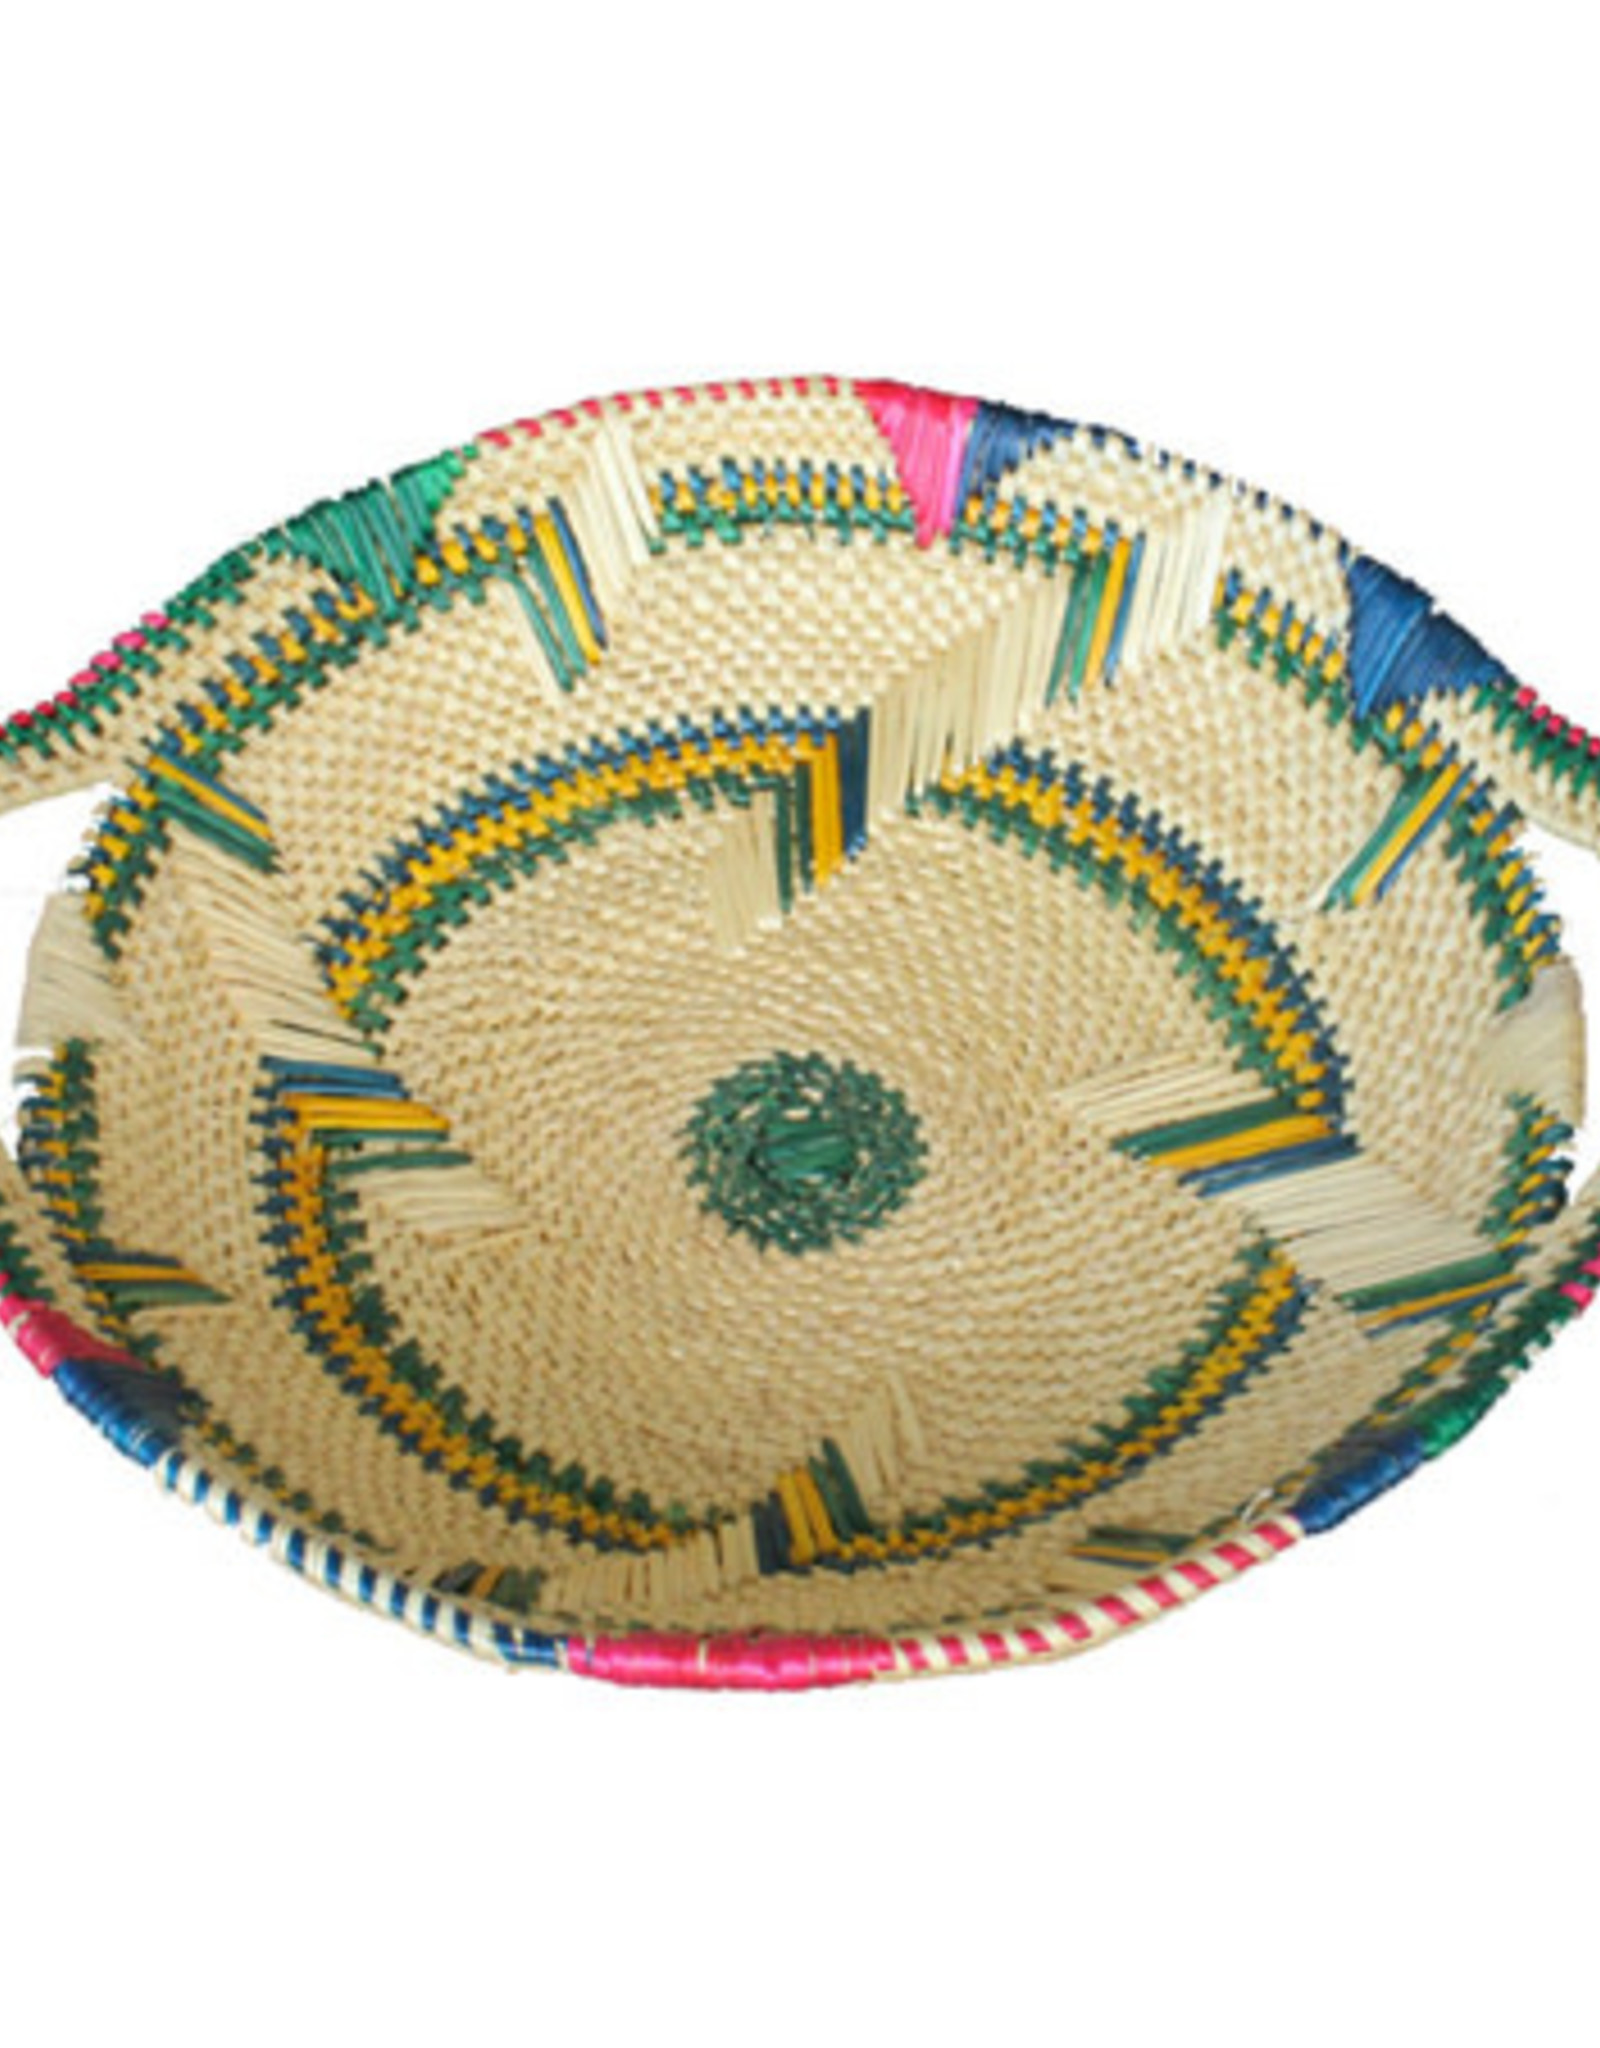 African Market Baskets Soe Tray